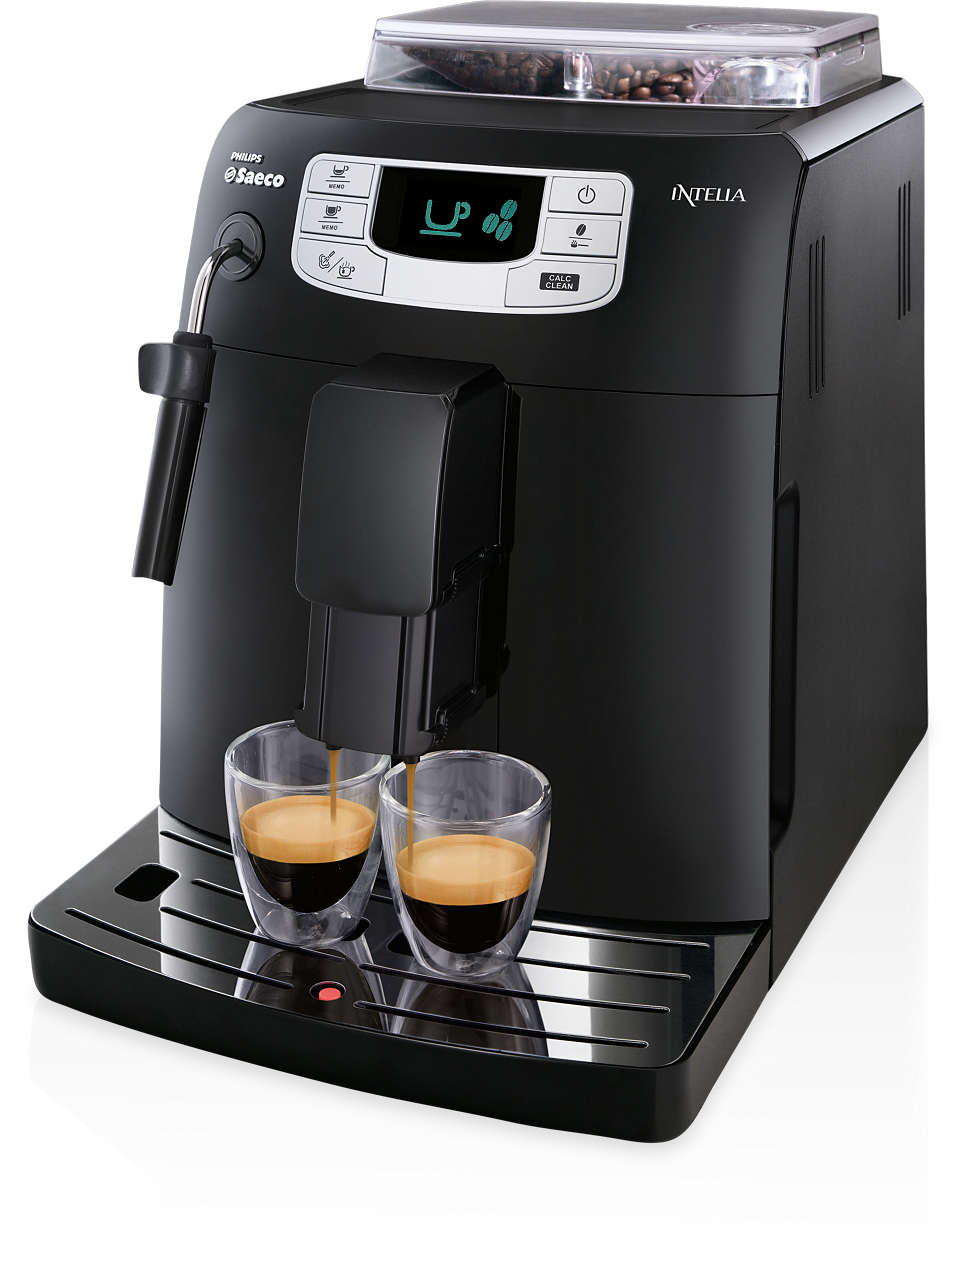 Espresso i caffe lungo za jednym naciśnięciem przycisku